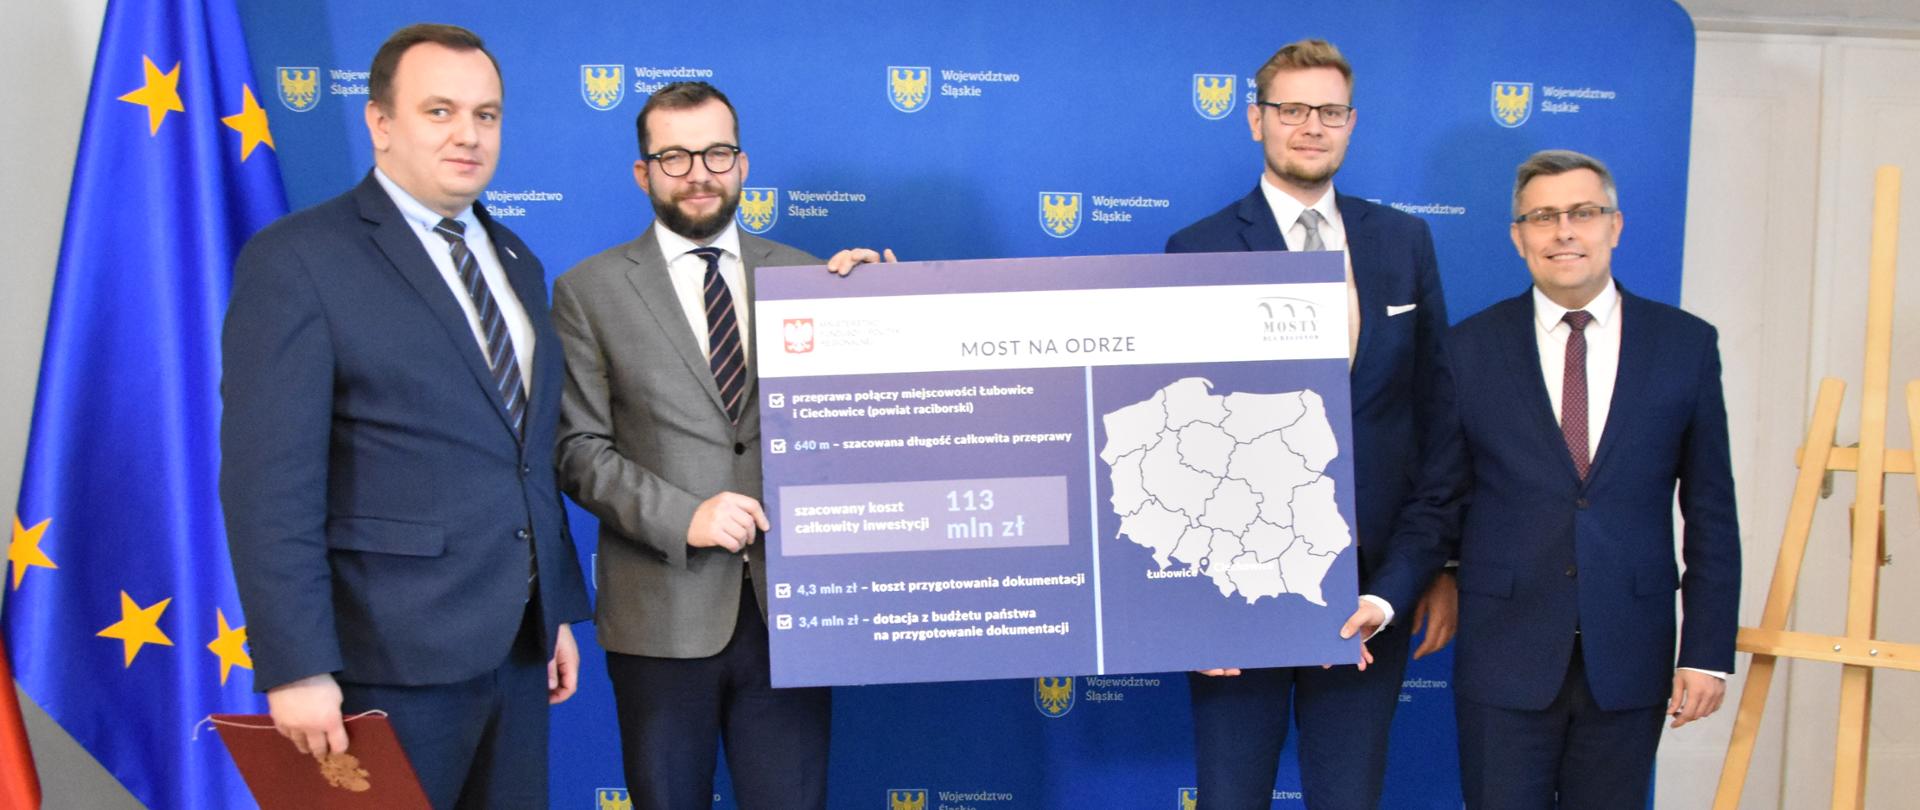 Zdjęcie, przedstawiające czterech mężczyzn. Dwóch z nich trzyma w dłoni planszę z napisem "Most na Odrze". Wśród osób jest Minister Puda, Marszałek Śląski i Wojewoda Śląski. 